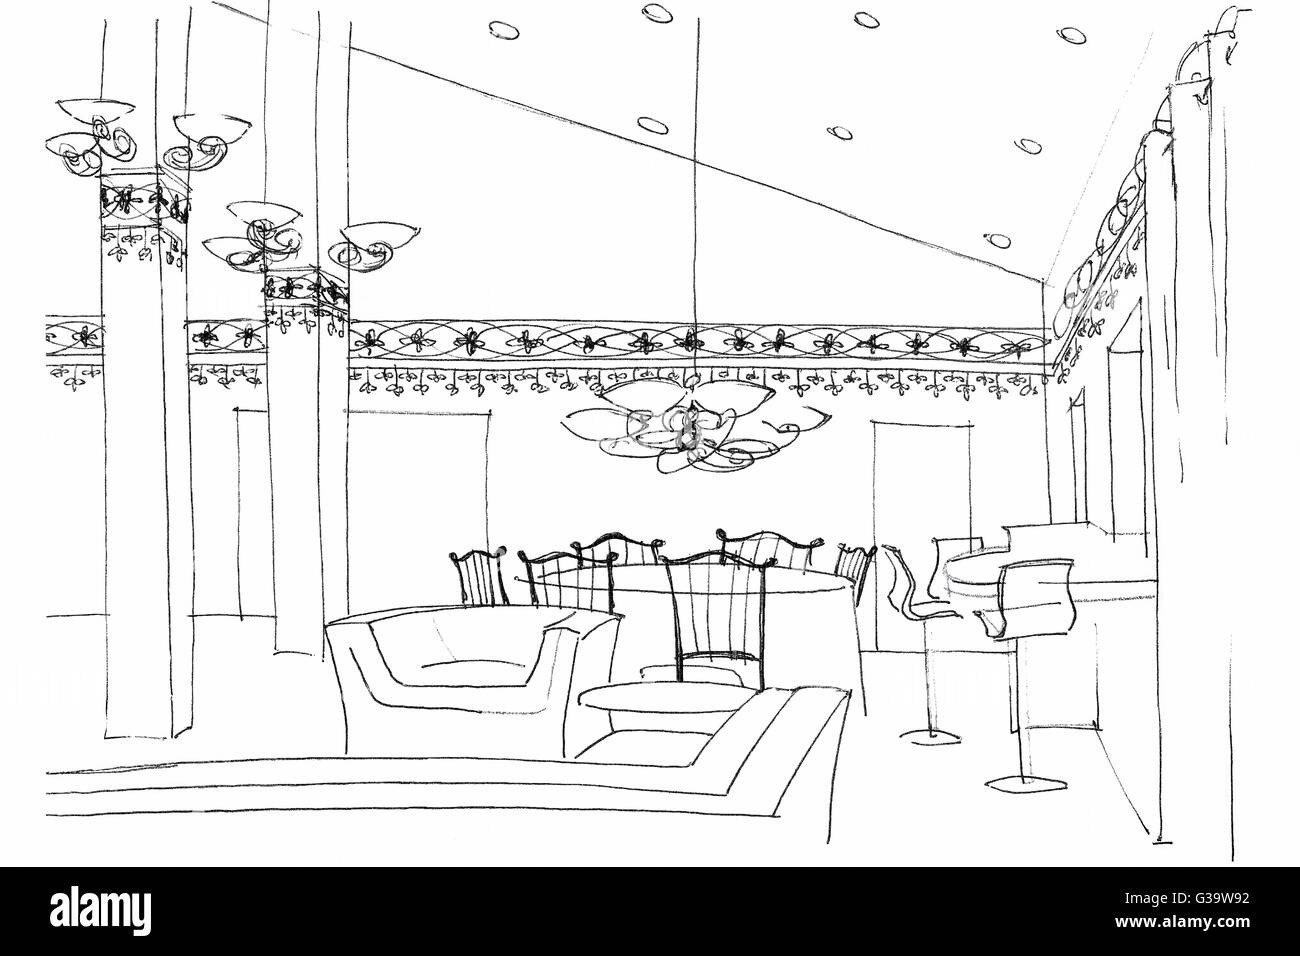 Fragment d'un graphique avec des meubles d'intérieur cafe, le matériel d'éclairage, et de la décoration Banque D'Images